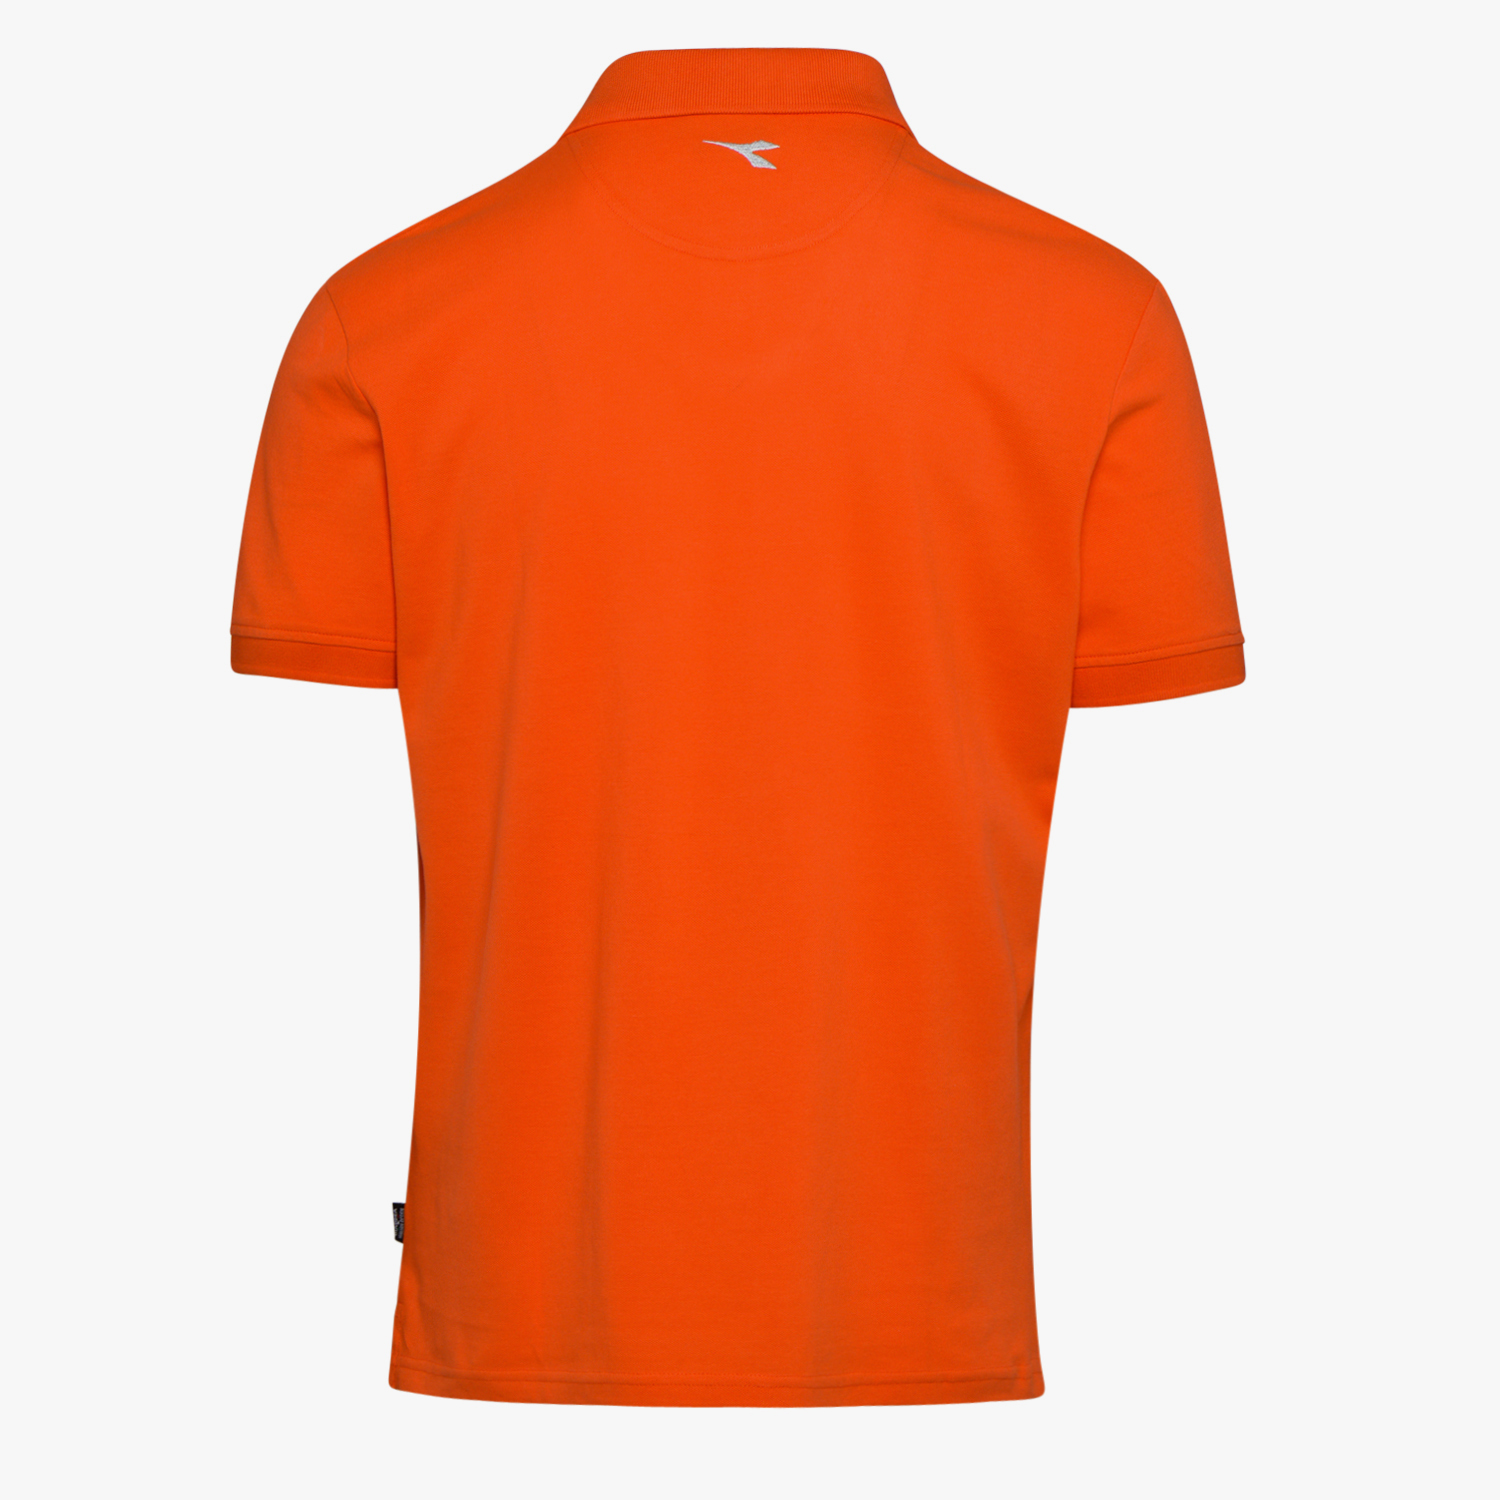 Utility Diadora - Work polo shirt POLO MC ATLAR II for man | eBay